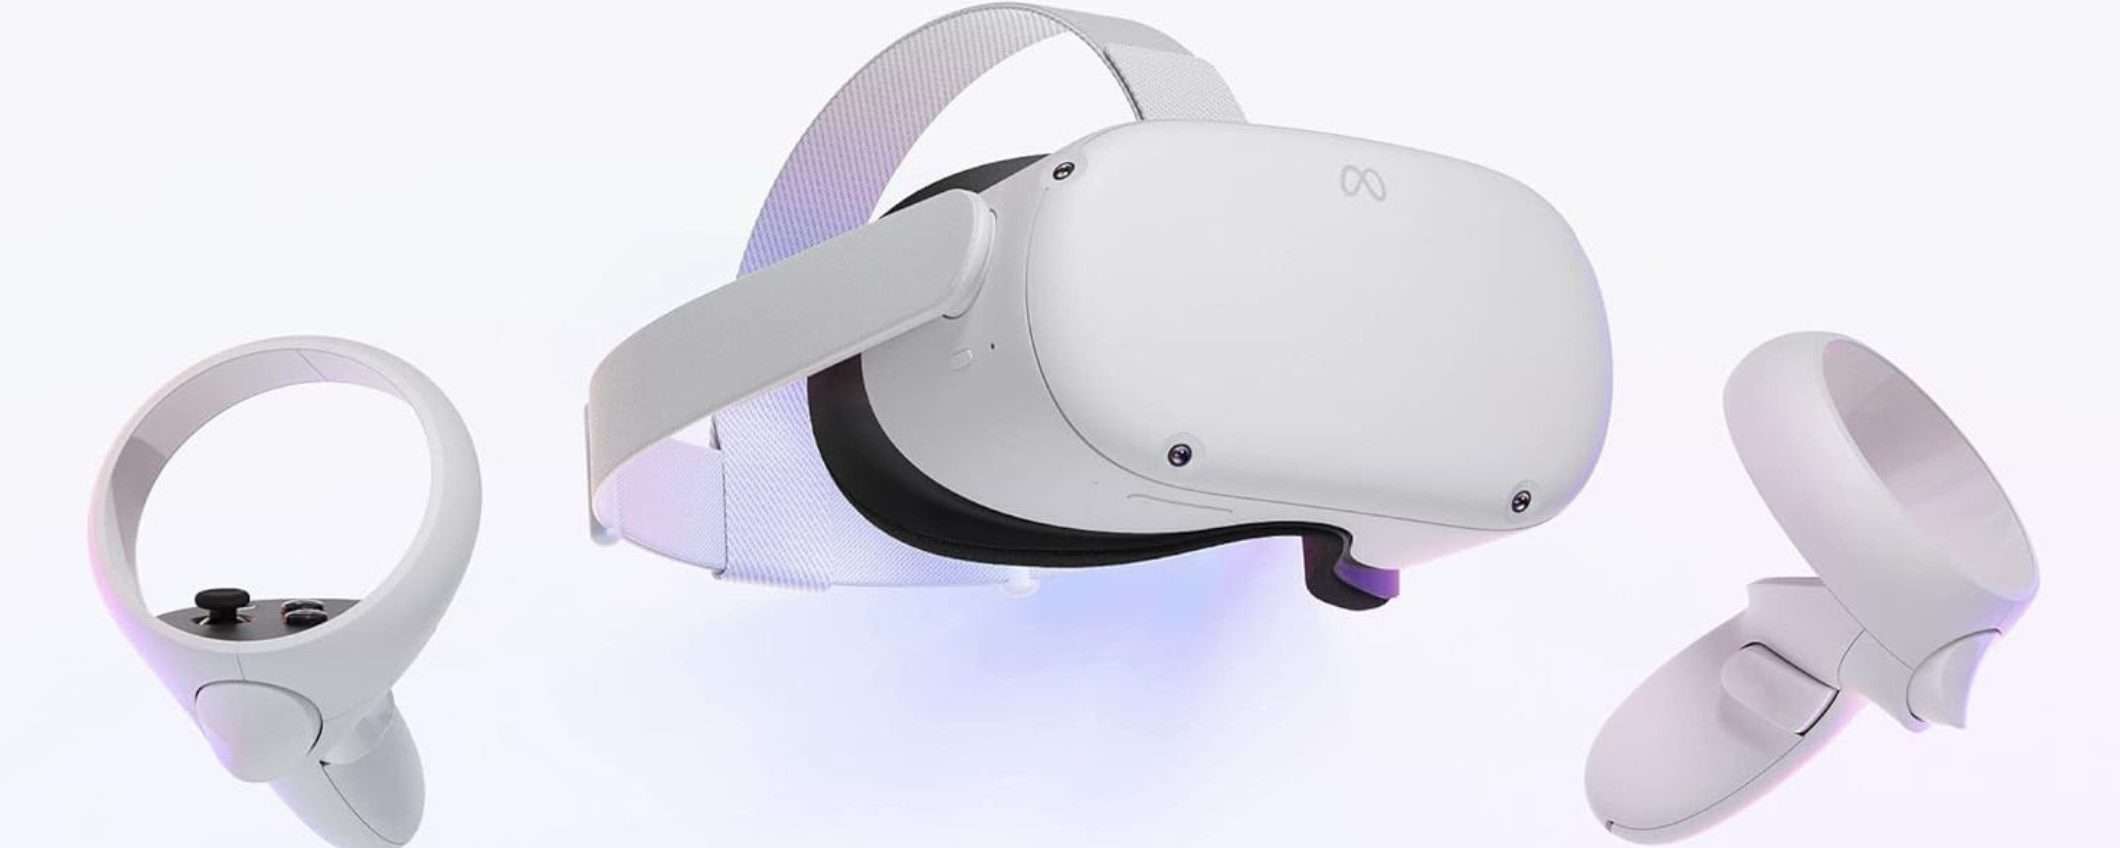 Meta Quest 2 a 249€, promo SHOCK: realtà virtuale a prezzo ACCESSIBILE